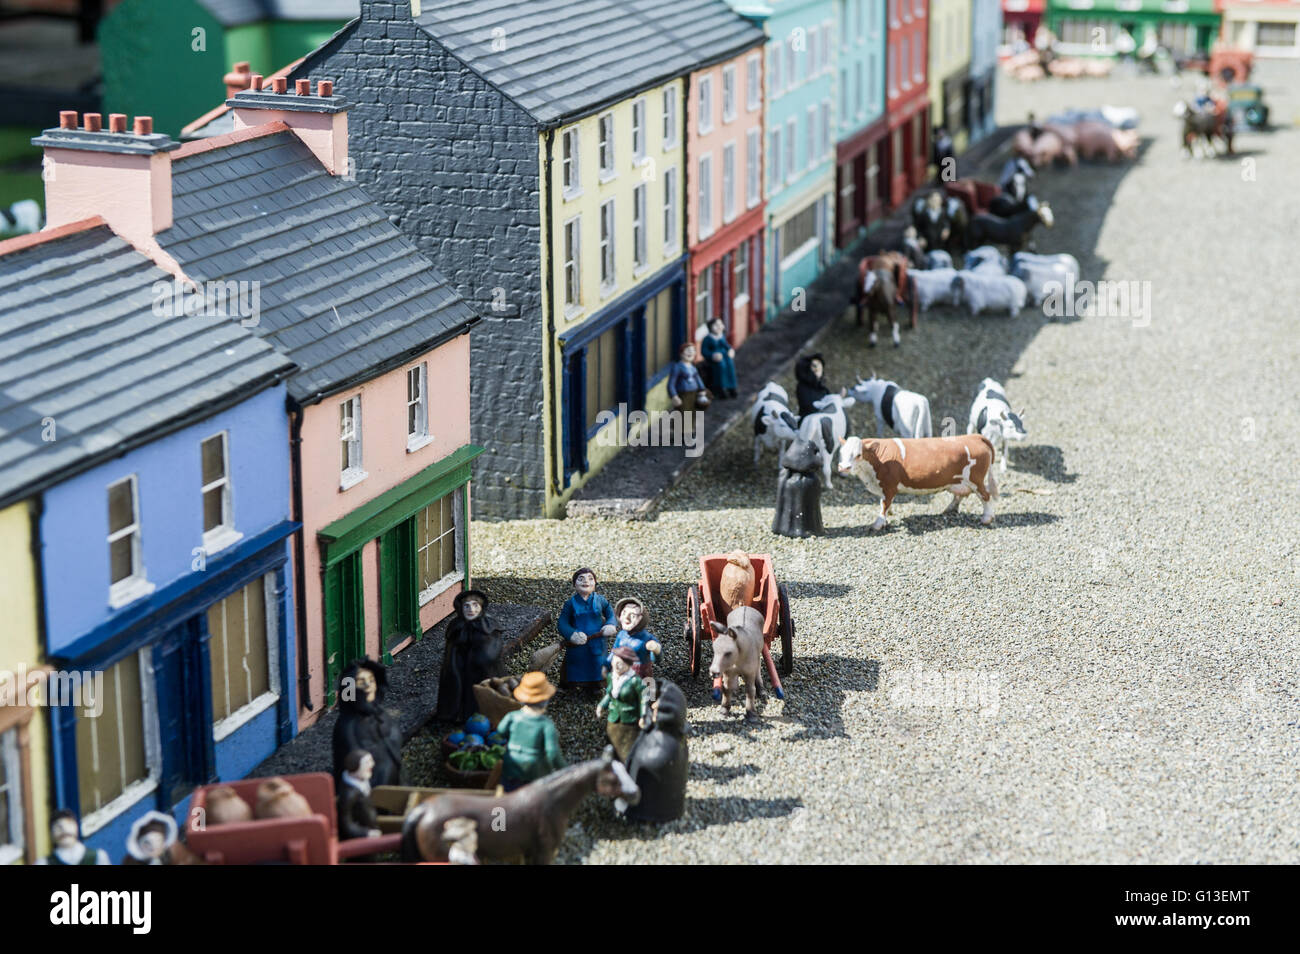 Scène de rue modèle Clonakilty Model Railway Village, West Cork, Irlande. Banque D'Images